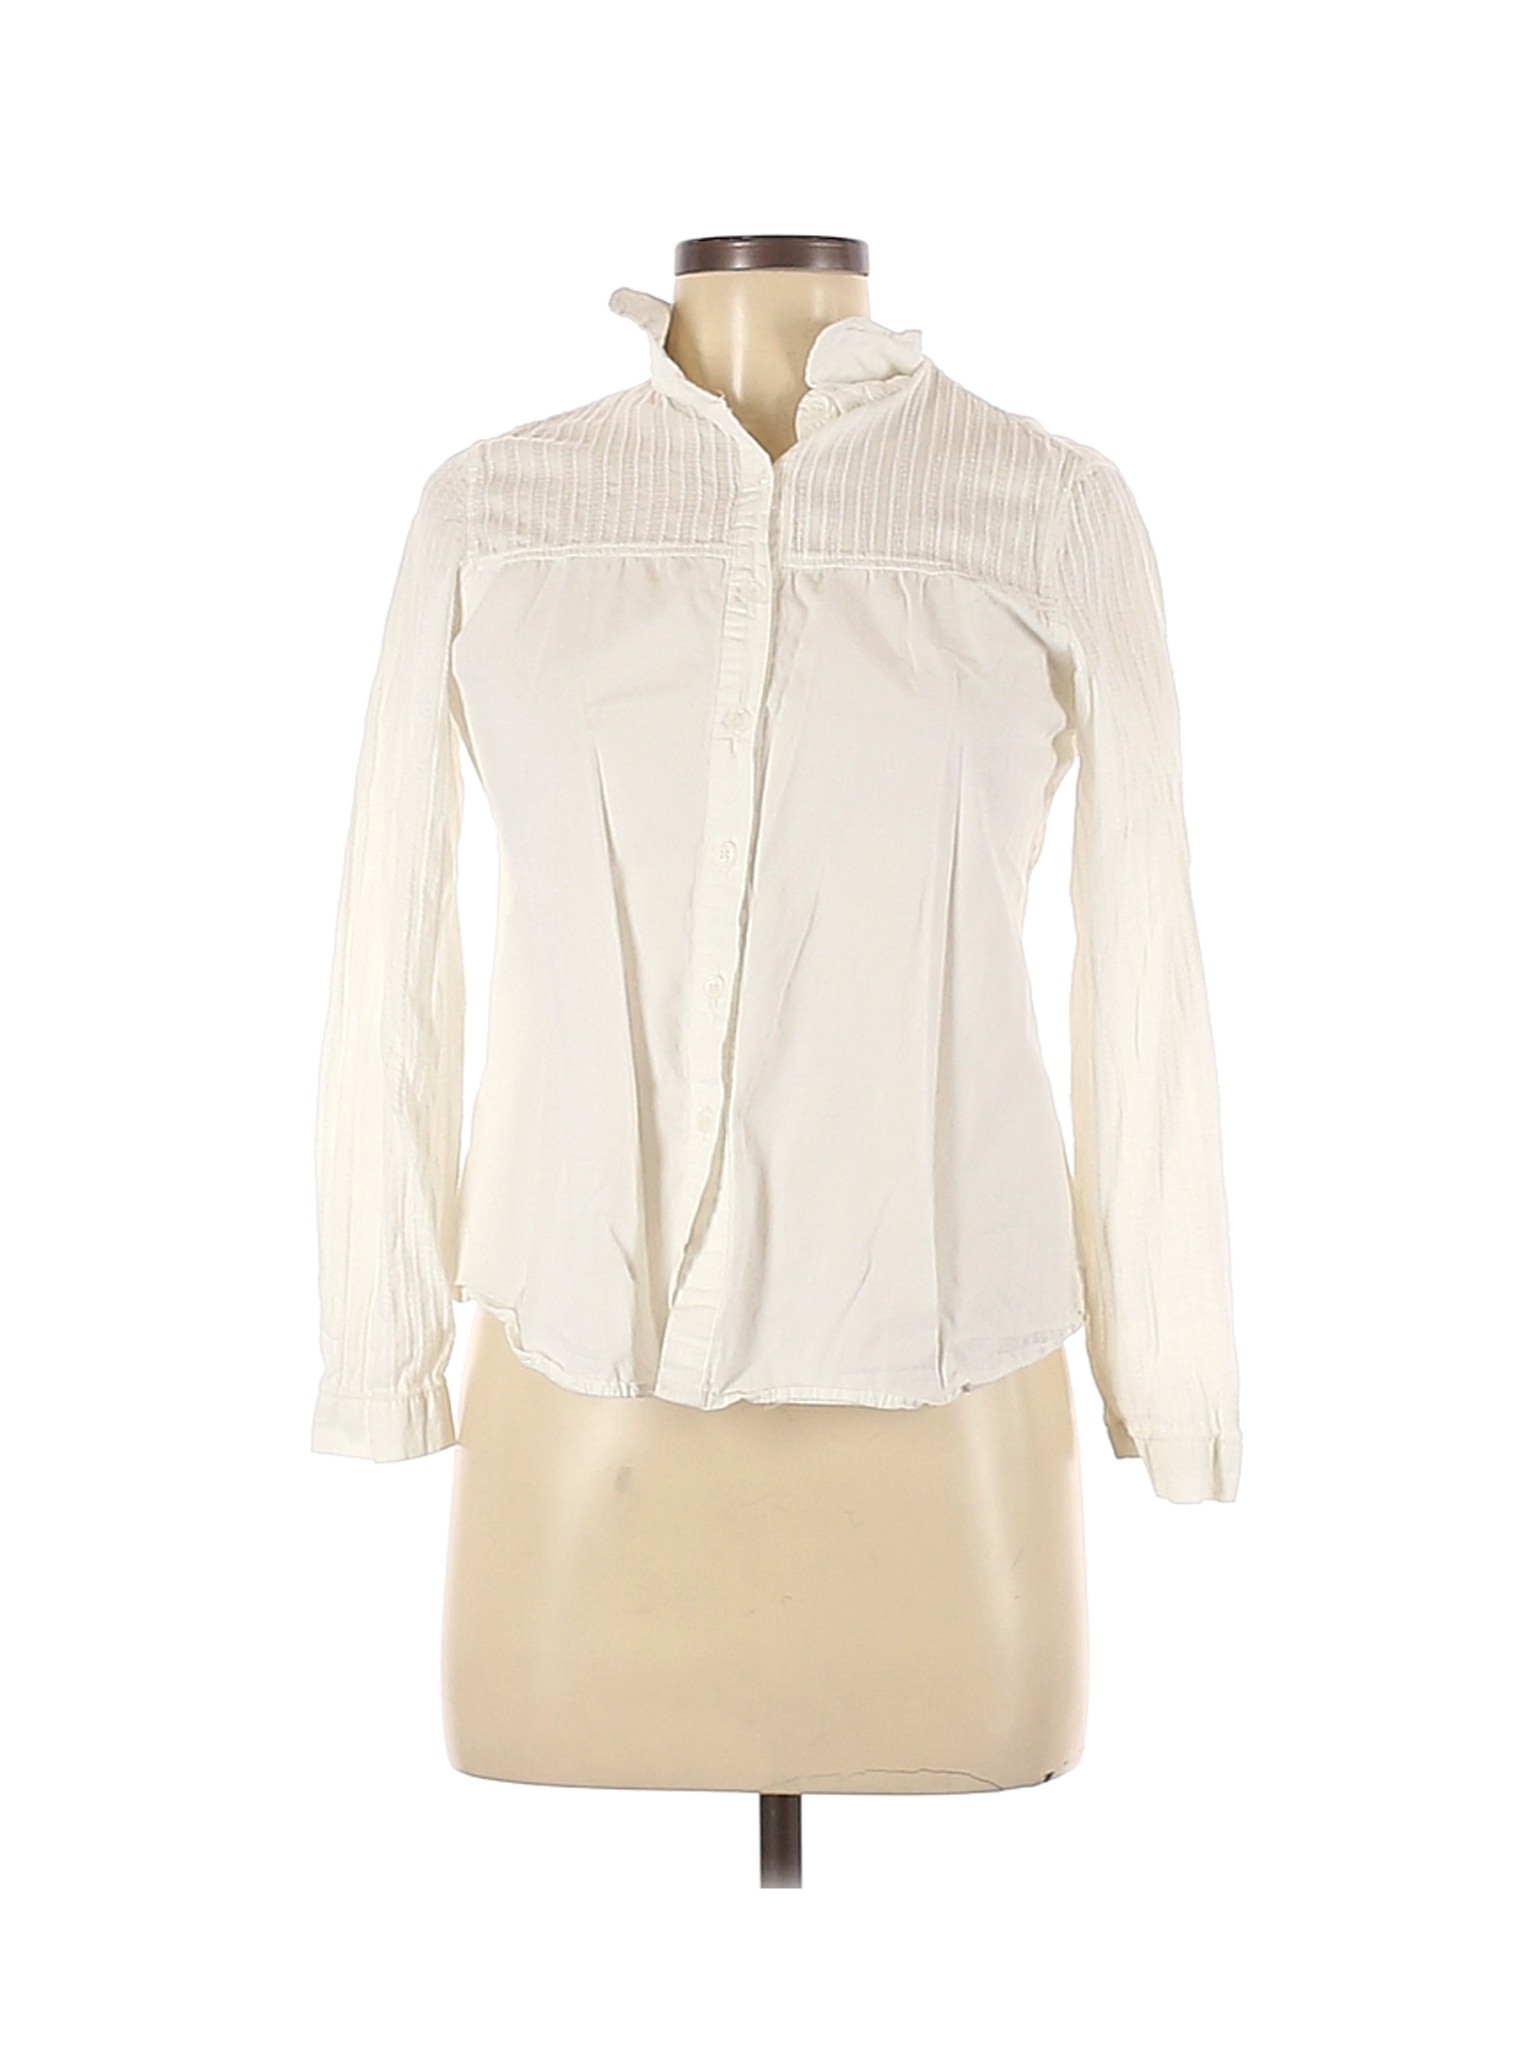 Assorted Brands Women Ivory Long Sleeve Button-Down Shirt M | eBay